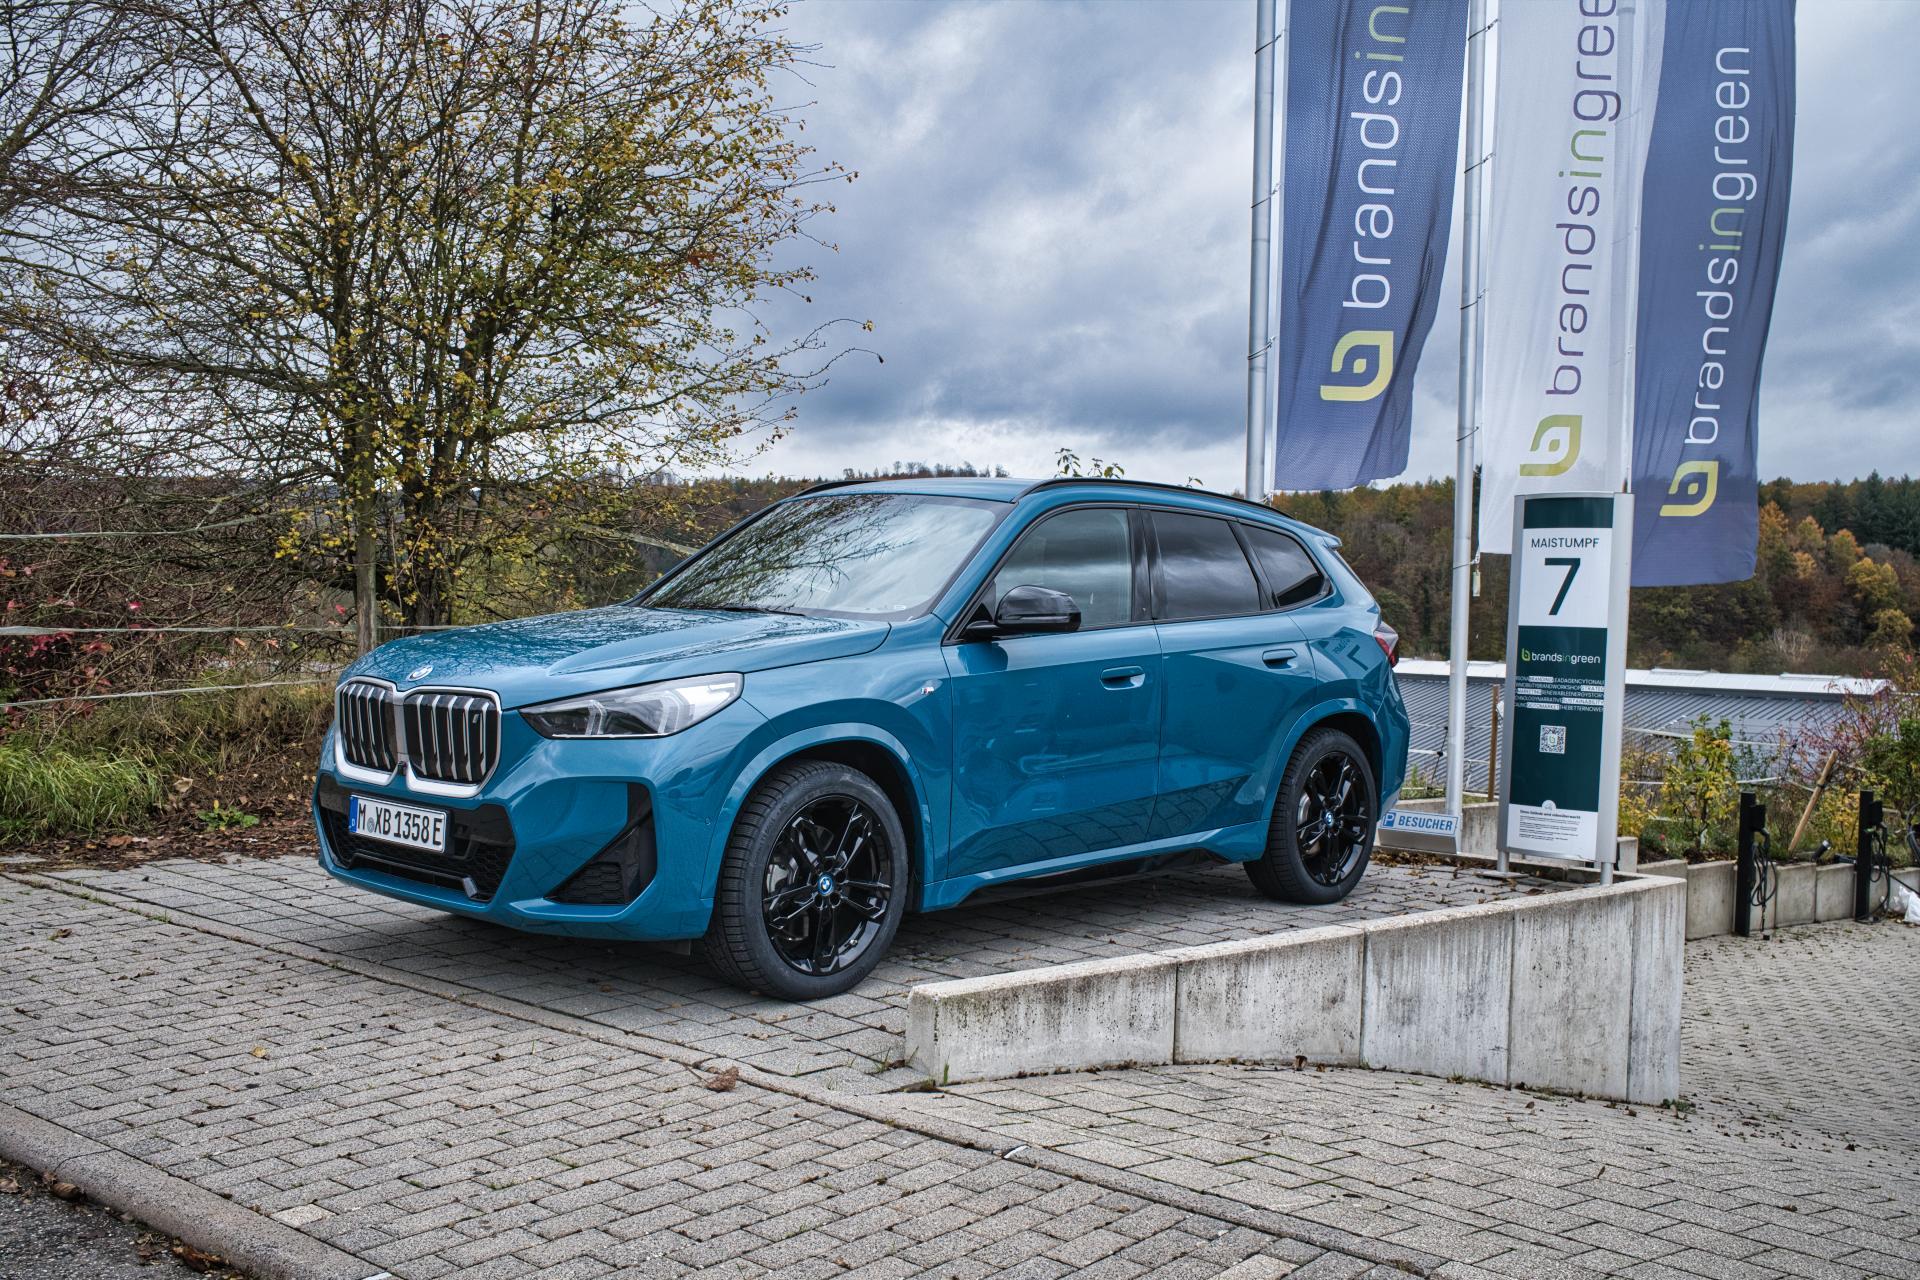 BMW iX1: Test, Eindrücke & Erfahrungen aus dem Alltag